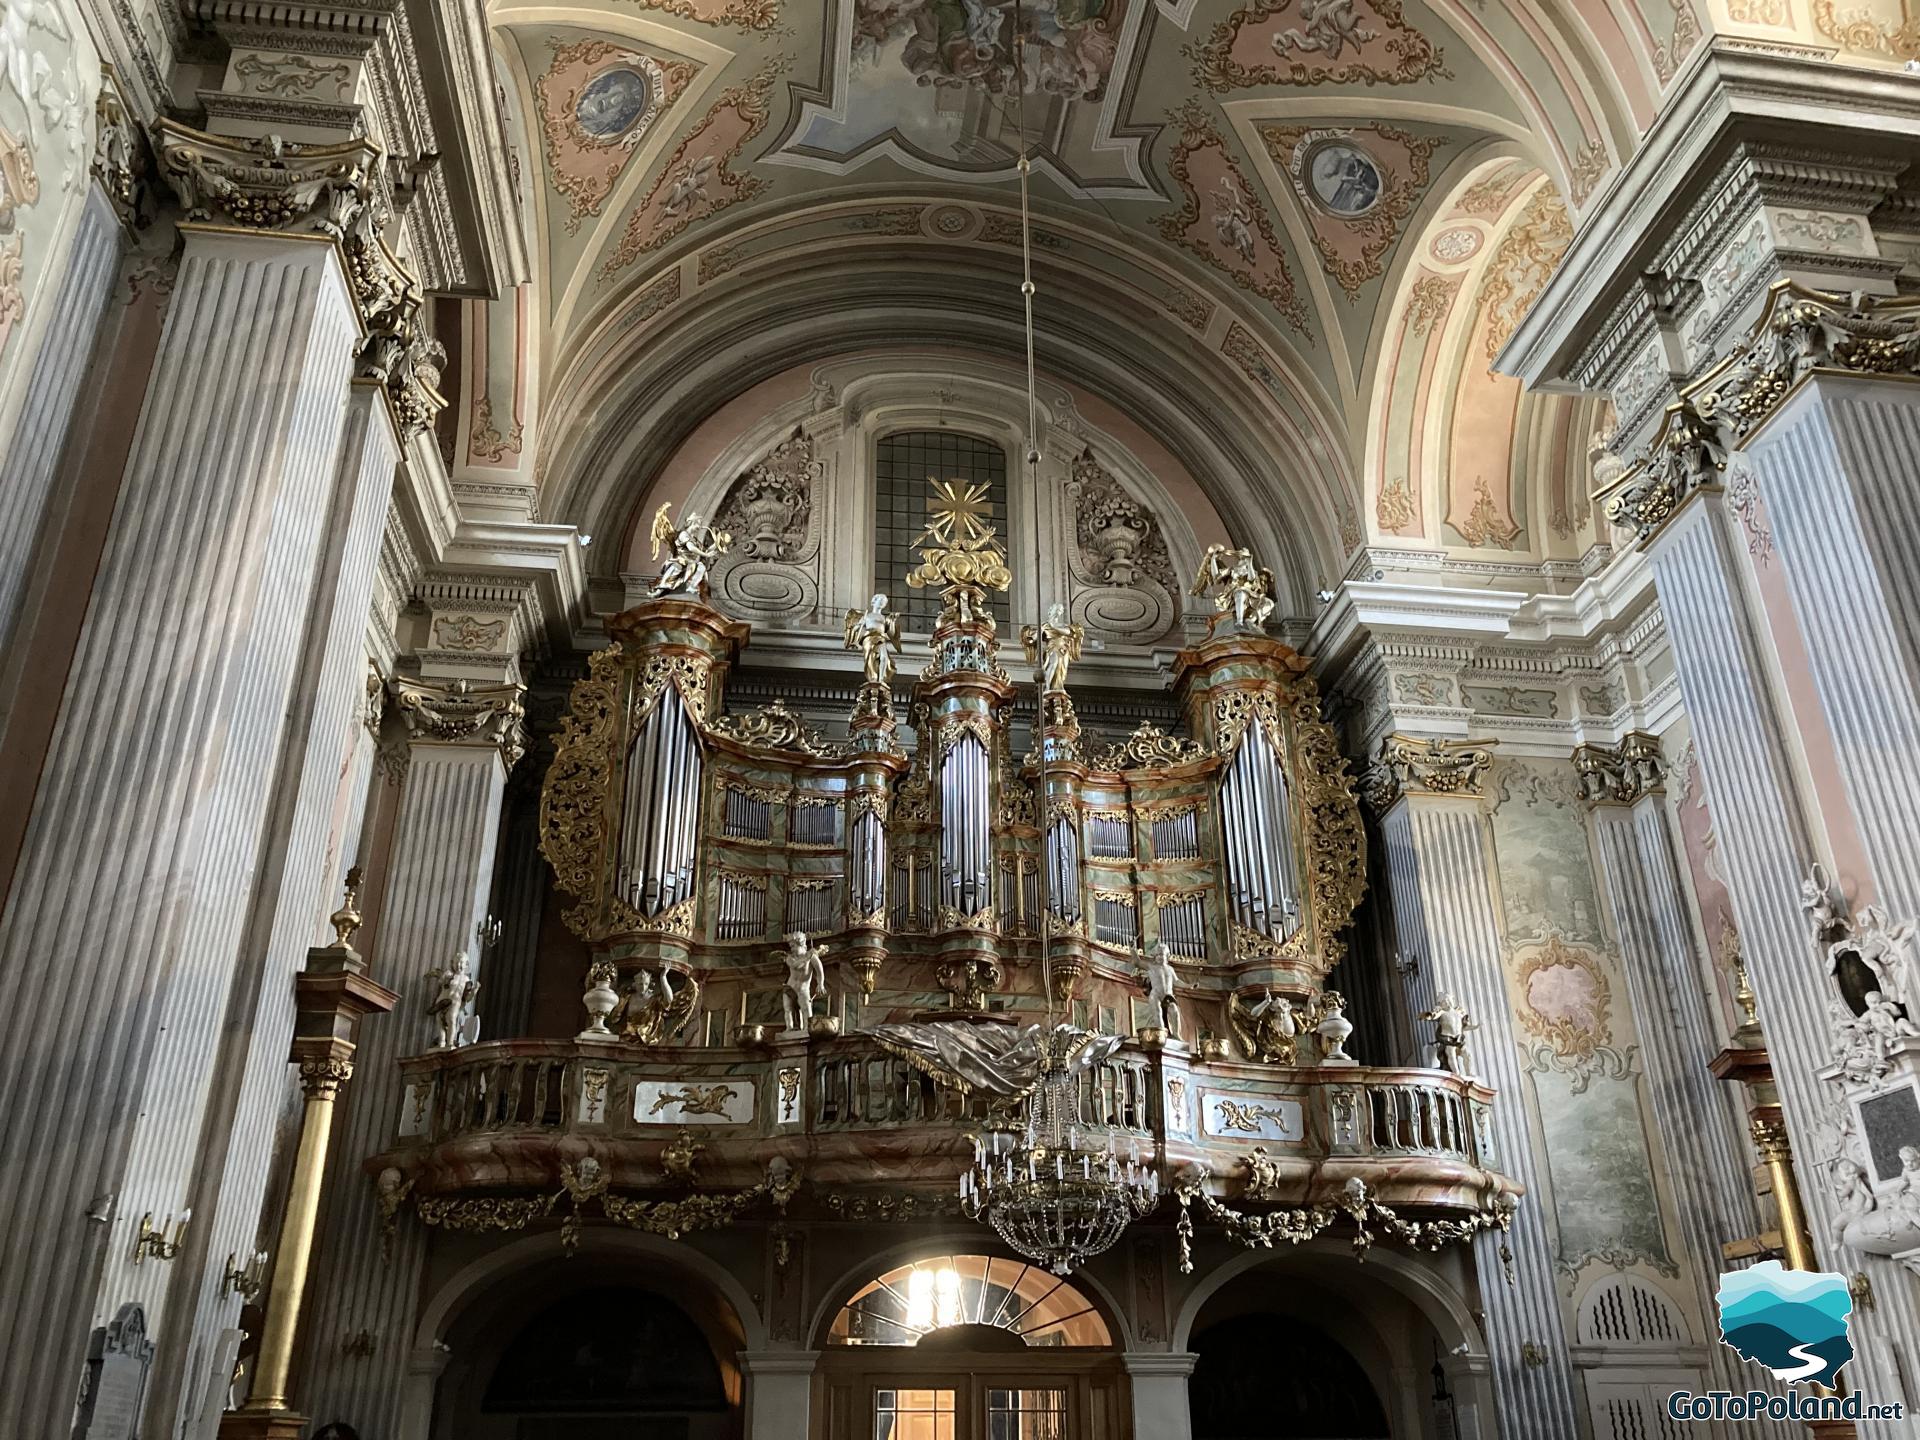 large organ in the church